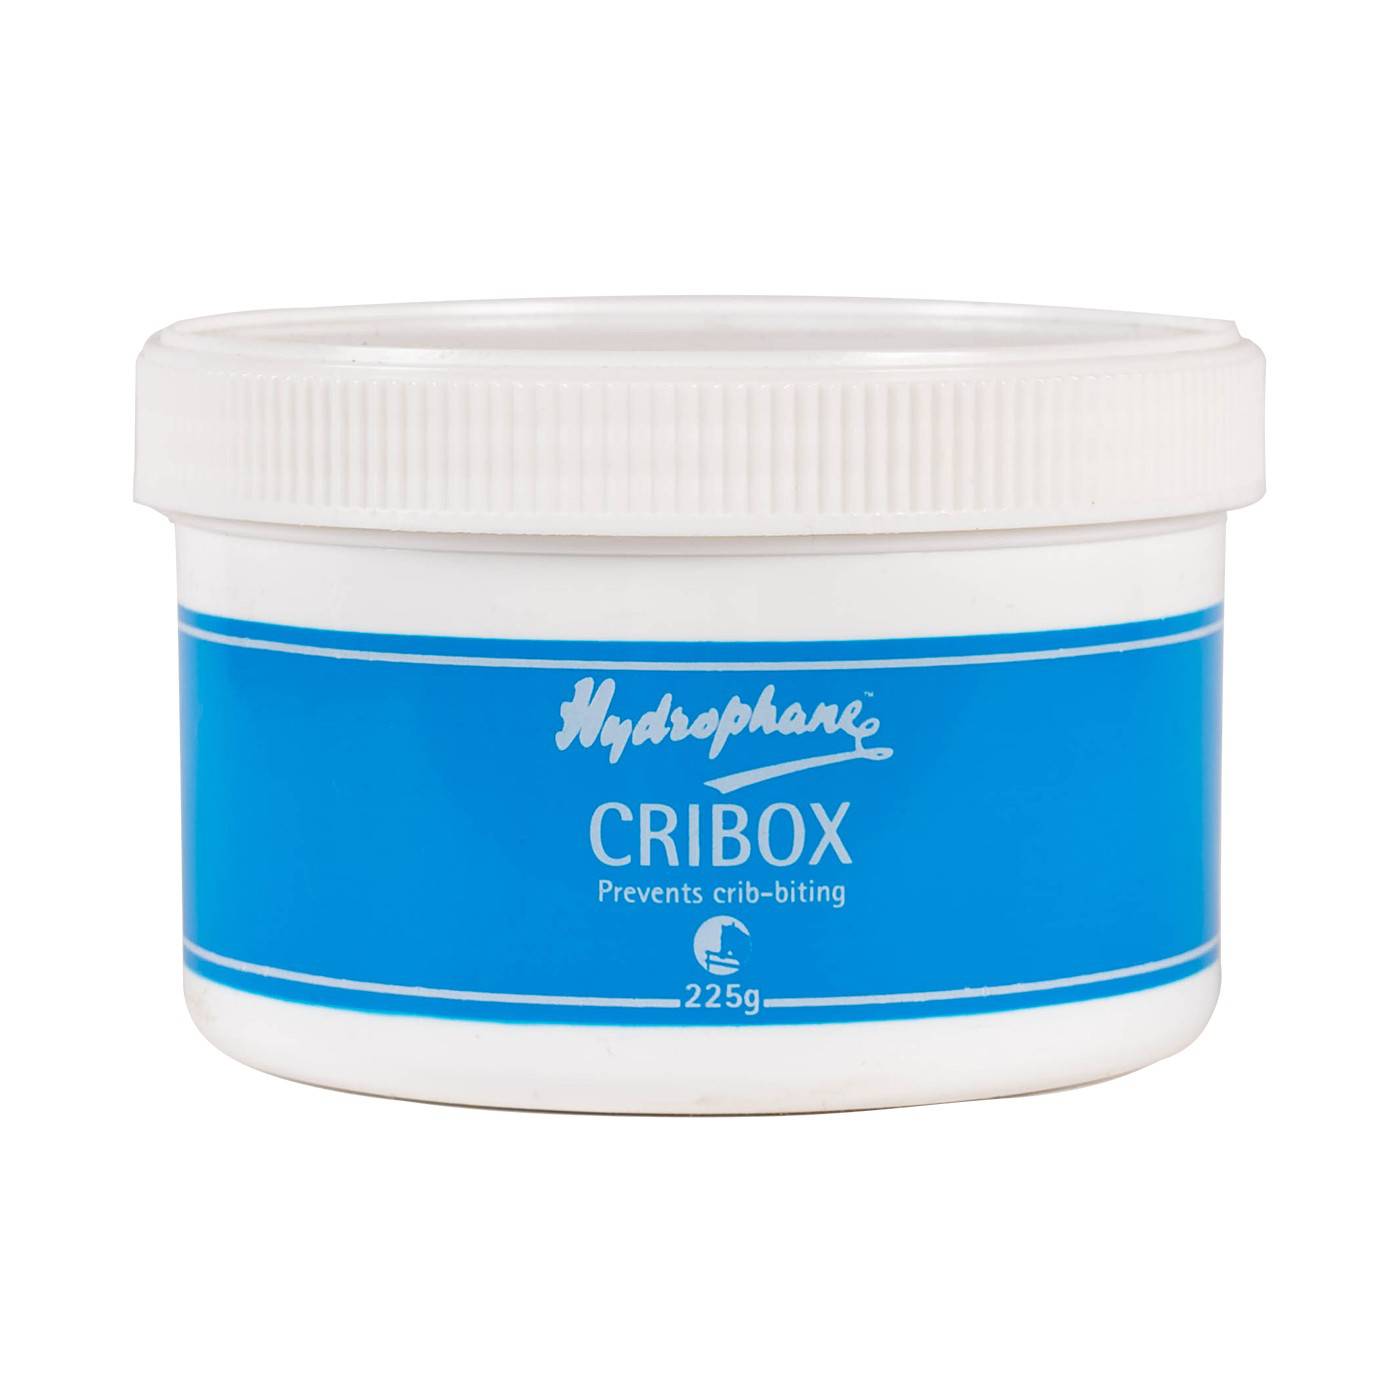 Hydrophane Cribox Anti-Cribbing Paste 225g